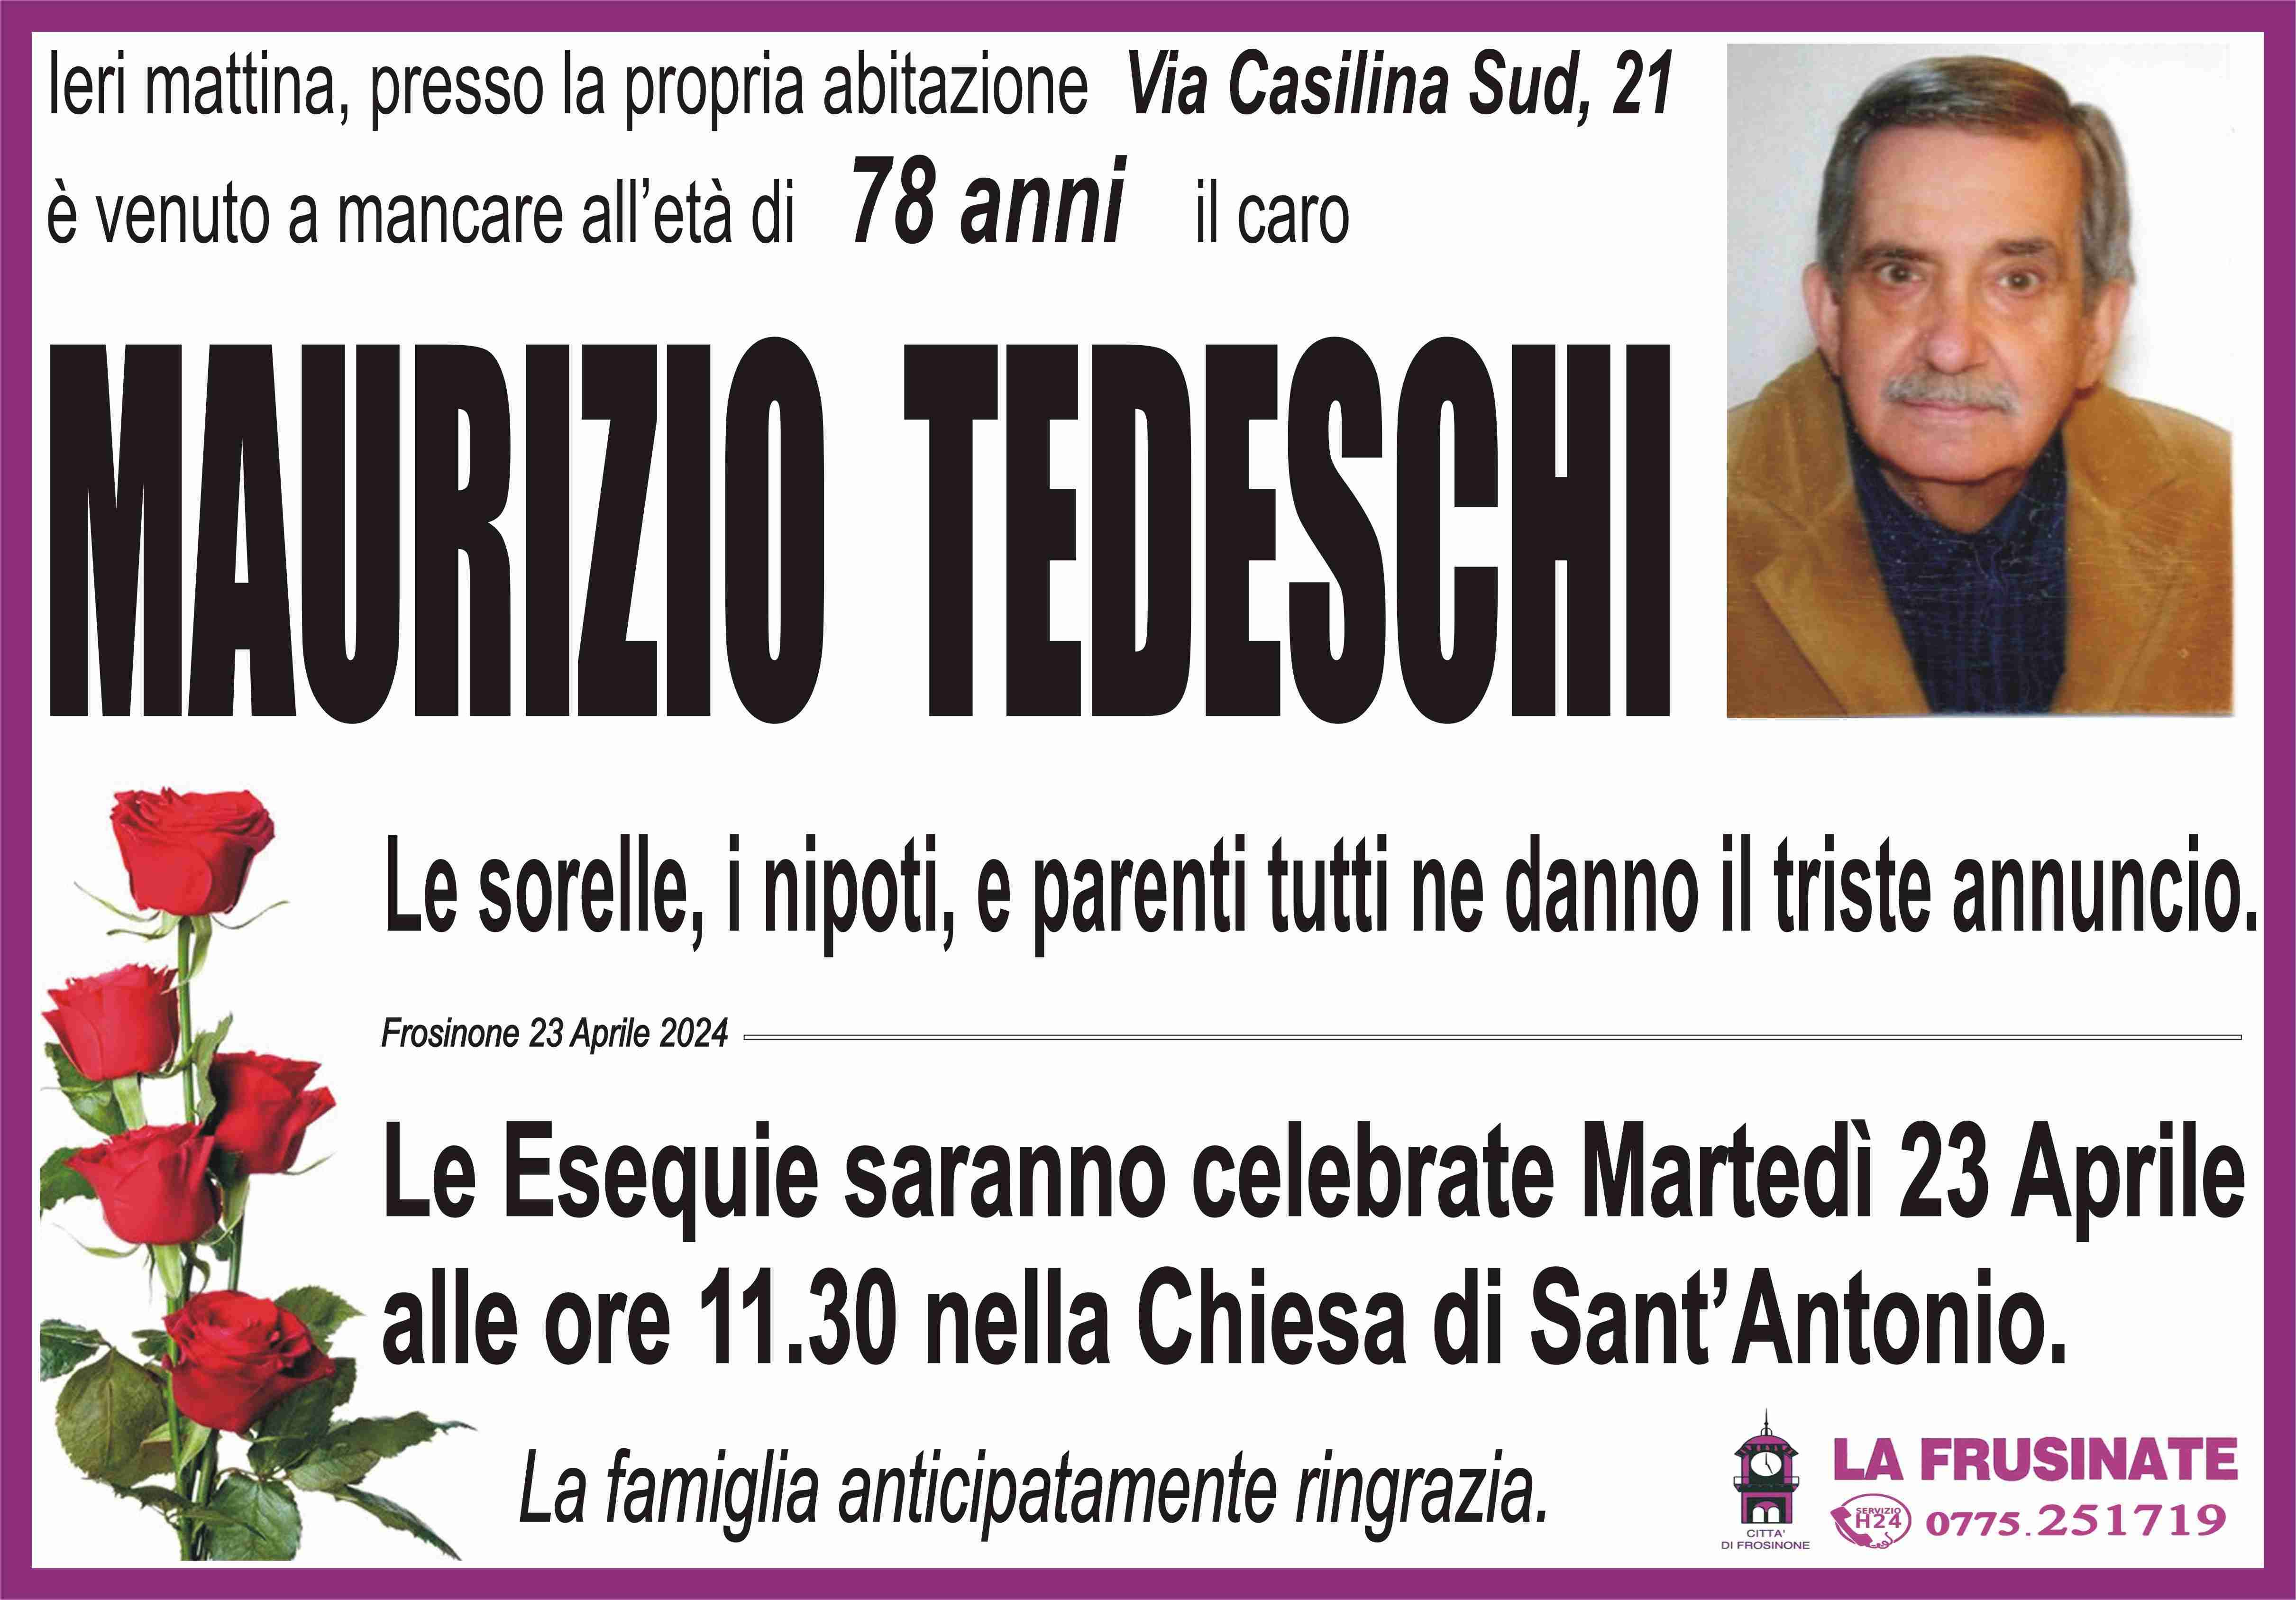 Maurizio Tedeschi